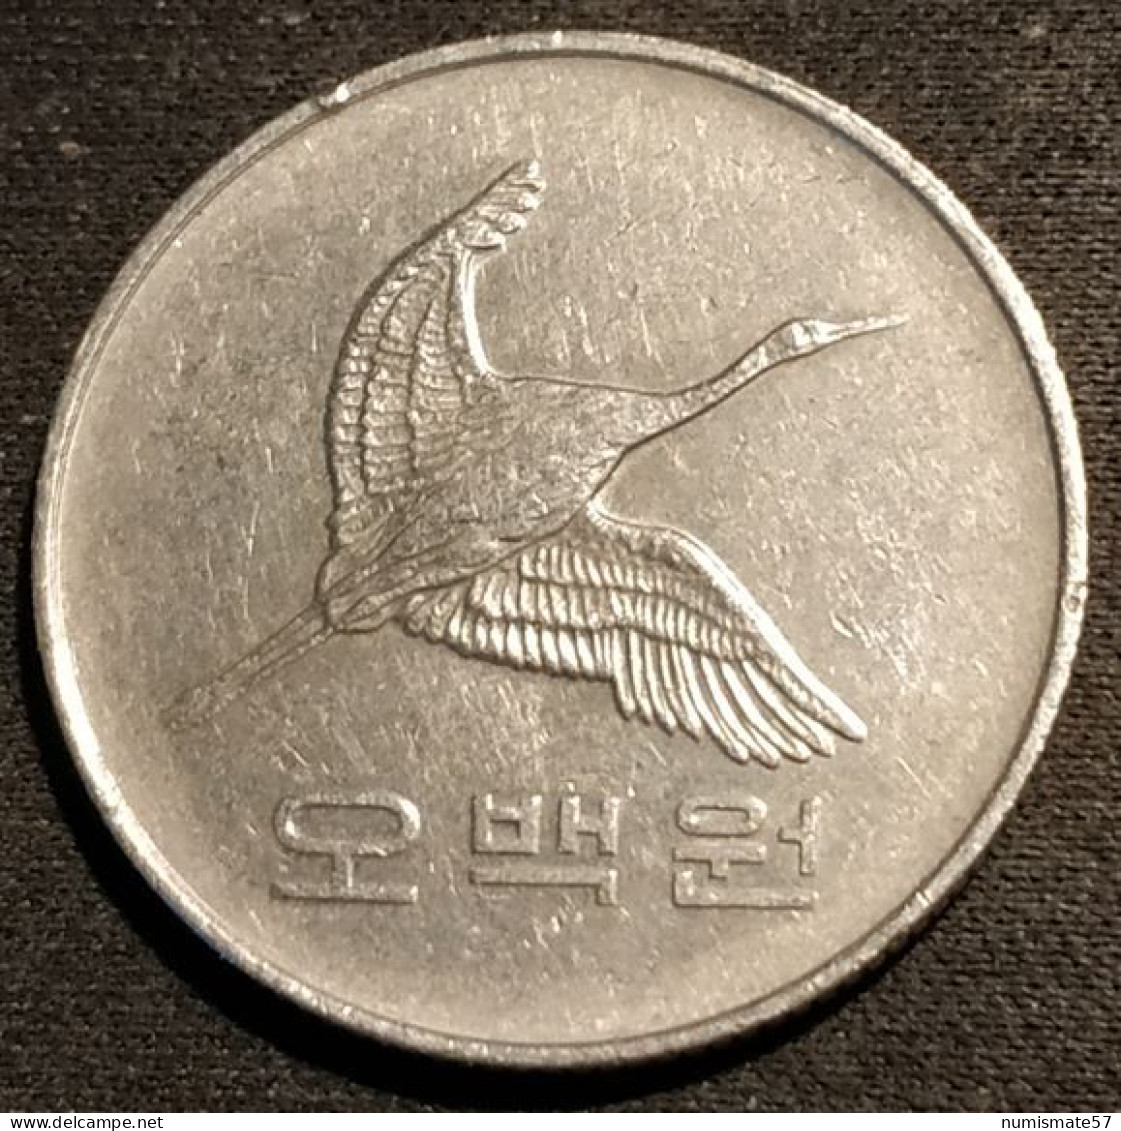 COREE DU SUD - SOUTH KOREA - 500 WON 1993 - Grue De Mandchourie - KM 27 - Korea, South